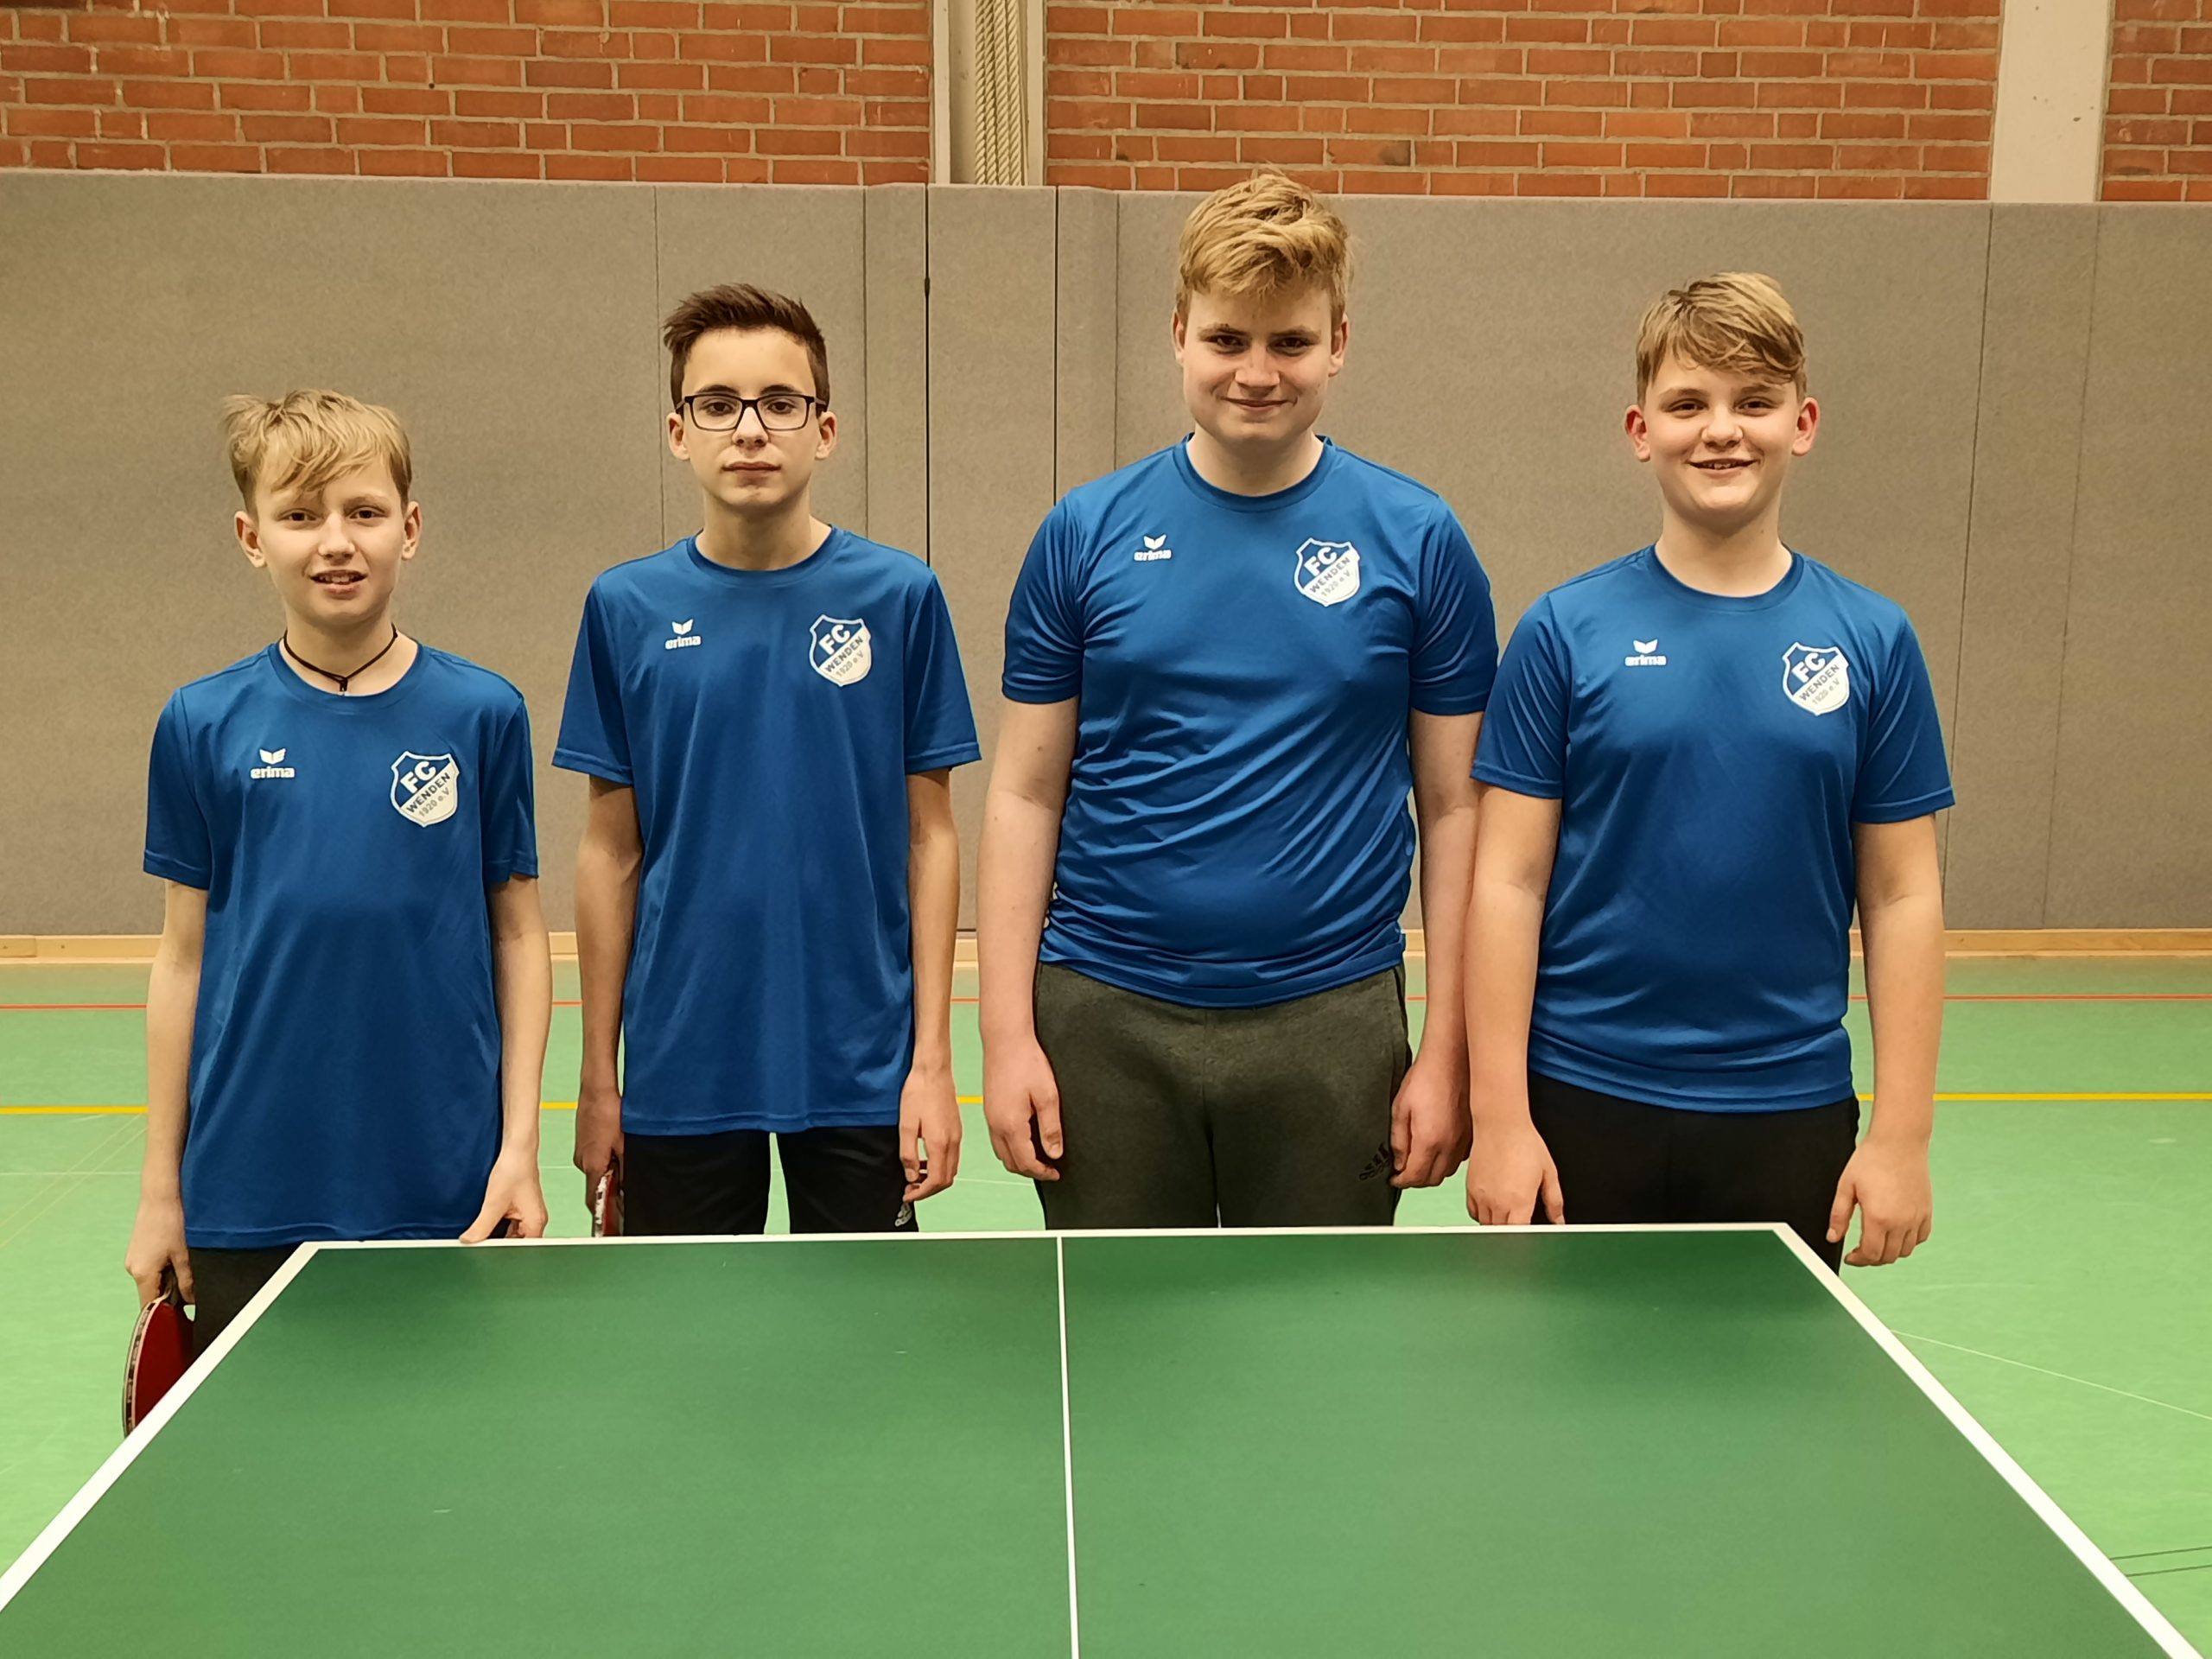 2. Jugend Tischtennis FC wenden in Braunschweig